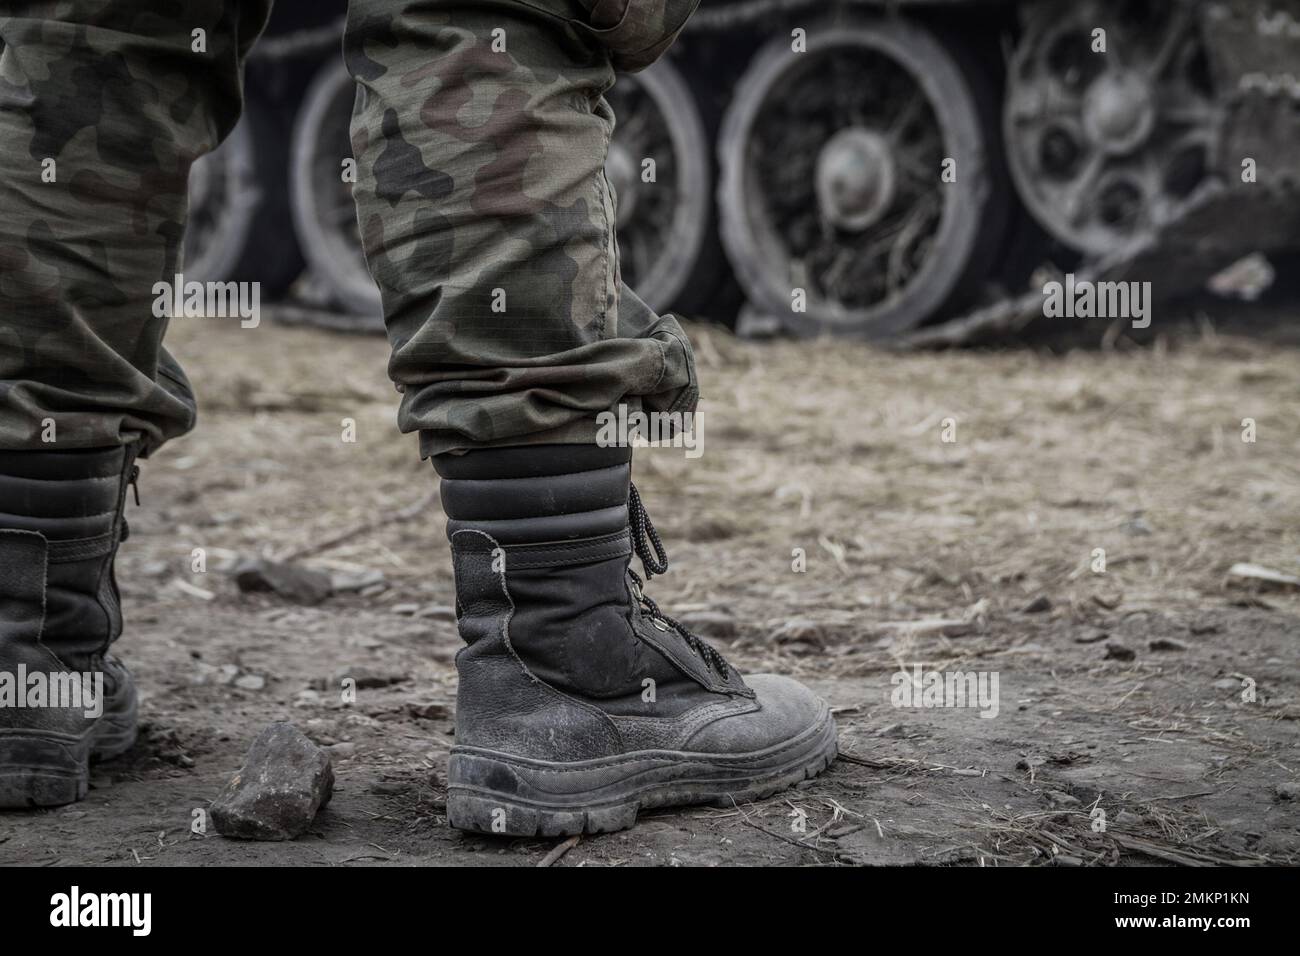 Des jambes de soldat sur un champ de bataille, portant un pantalon militaire de camouflage dans les bois, un pantalon de camouflage. Roues tracées de char d'armée en arrière-plan. Banque D'Images